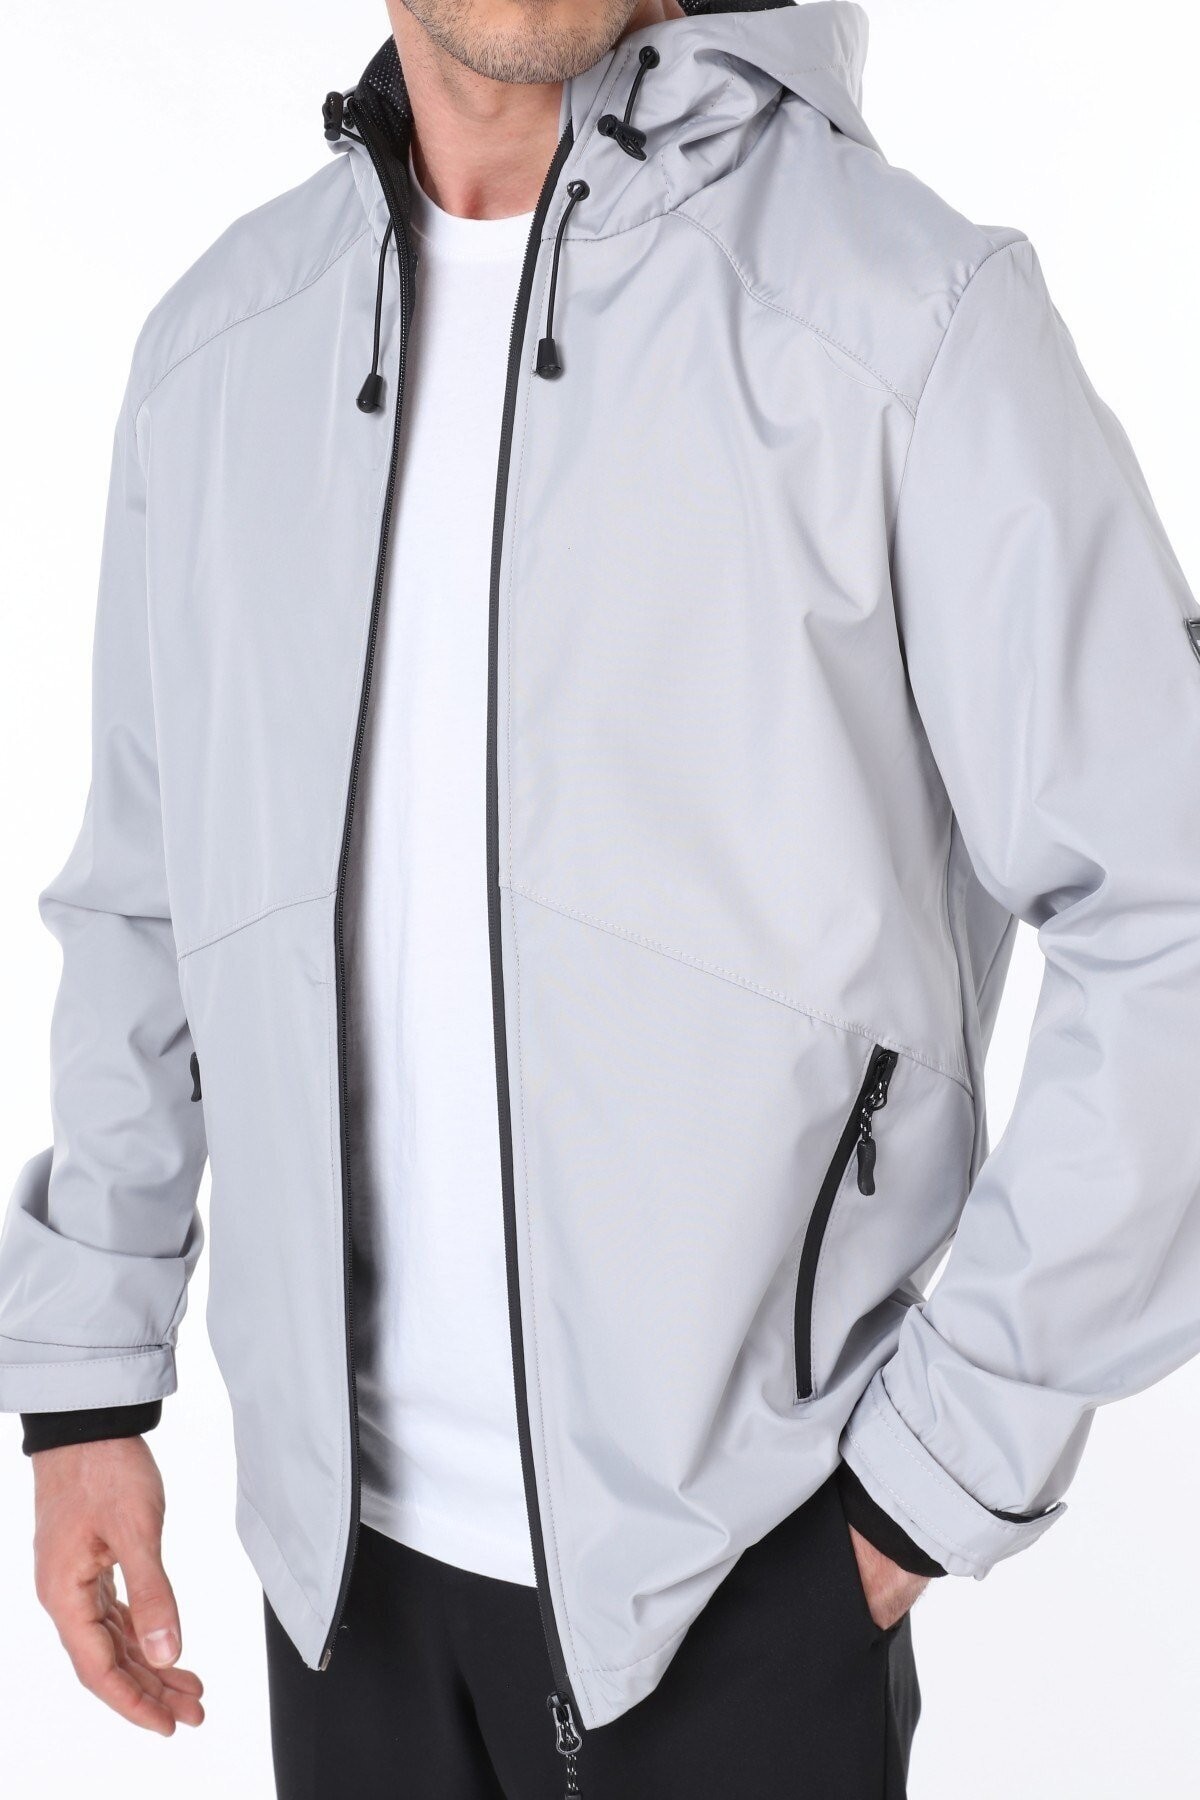 Ghassy Co.Erkek Rüzgarlık/Yağmurluk Outdoor Omuz Detaylı Mevsimlik Füme Spor Ceket - GRİ